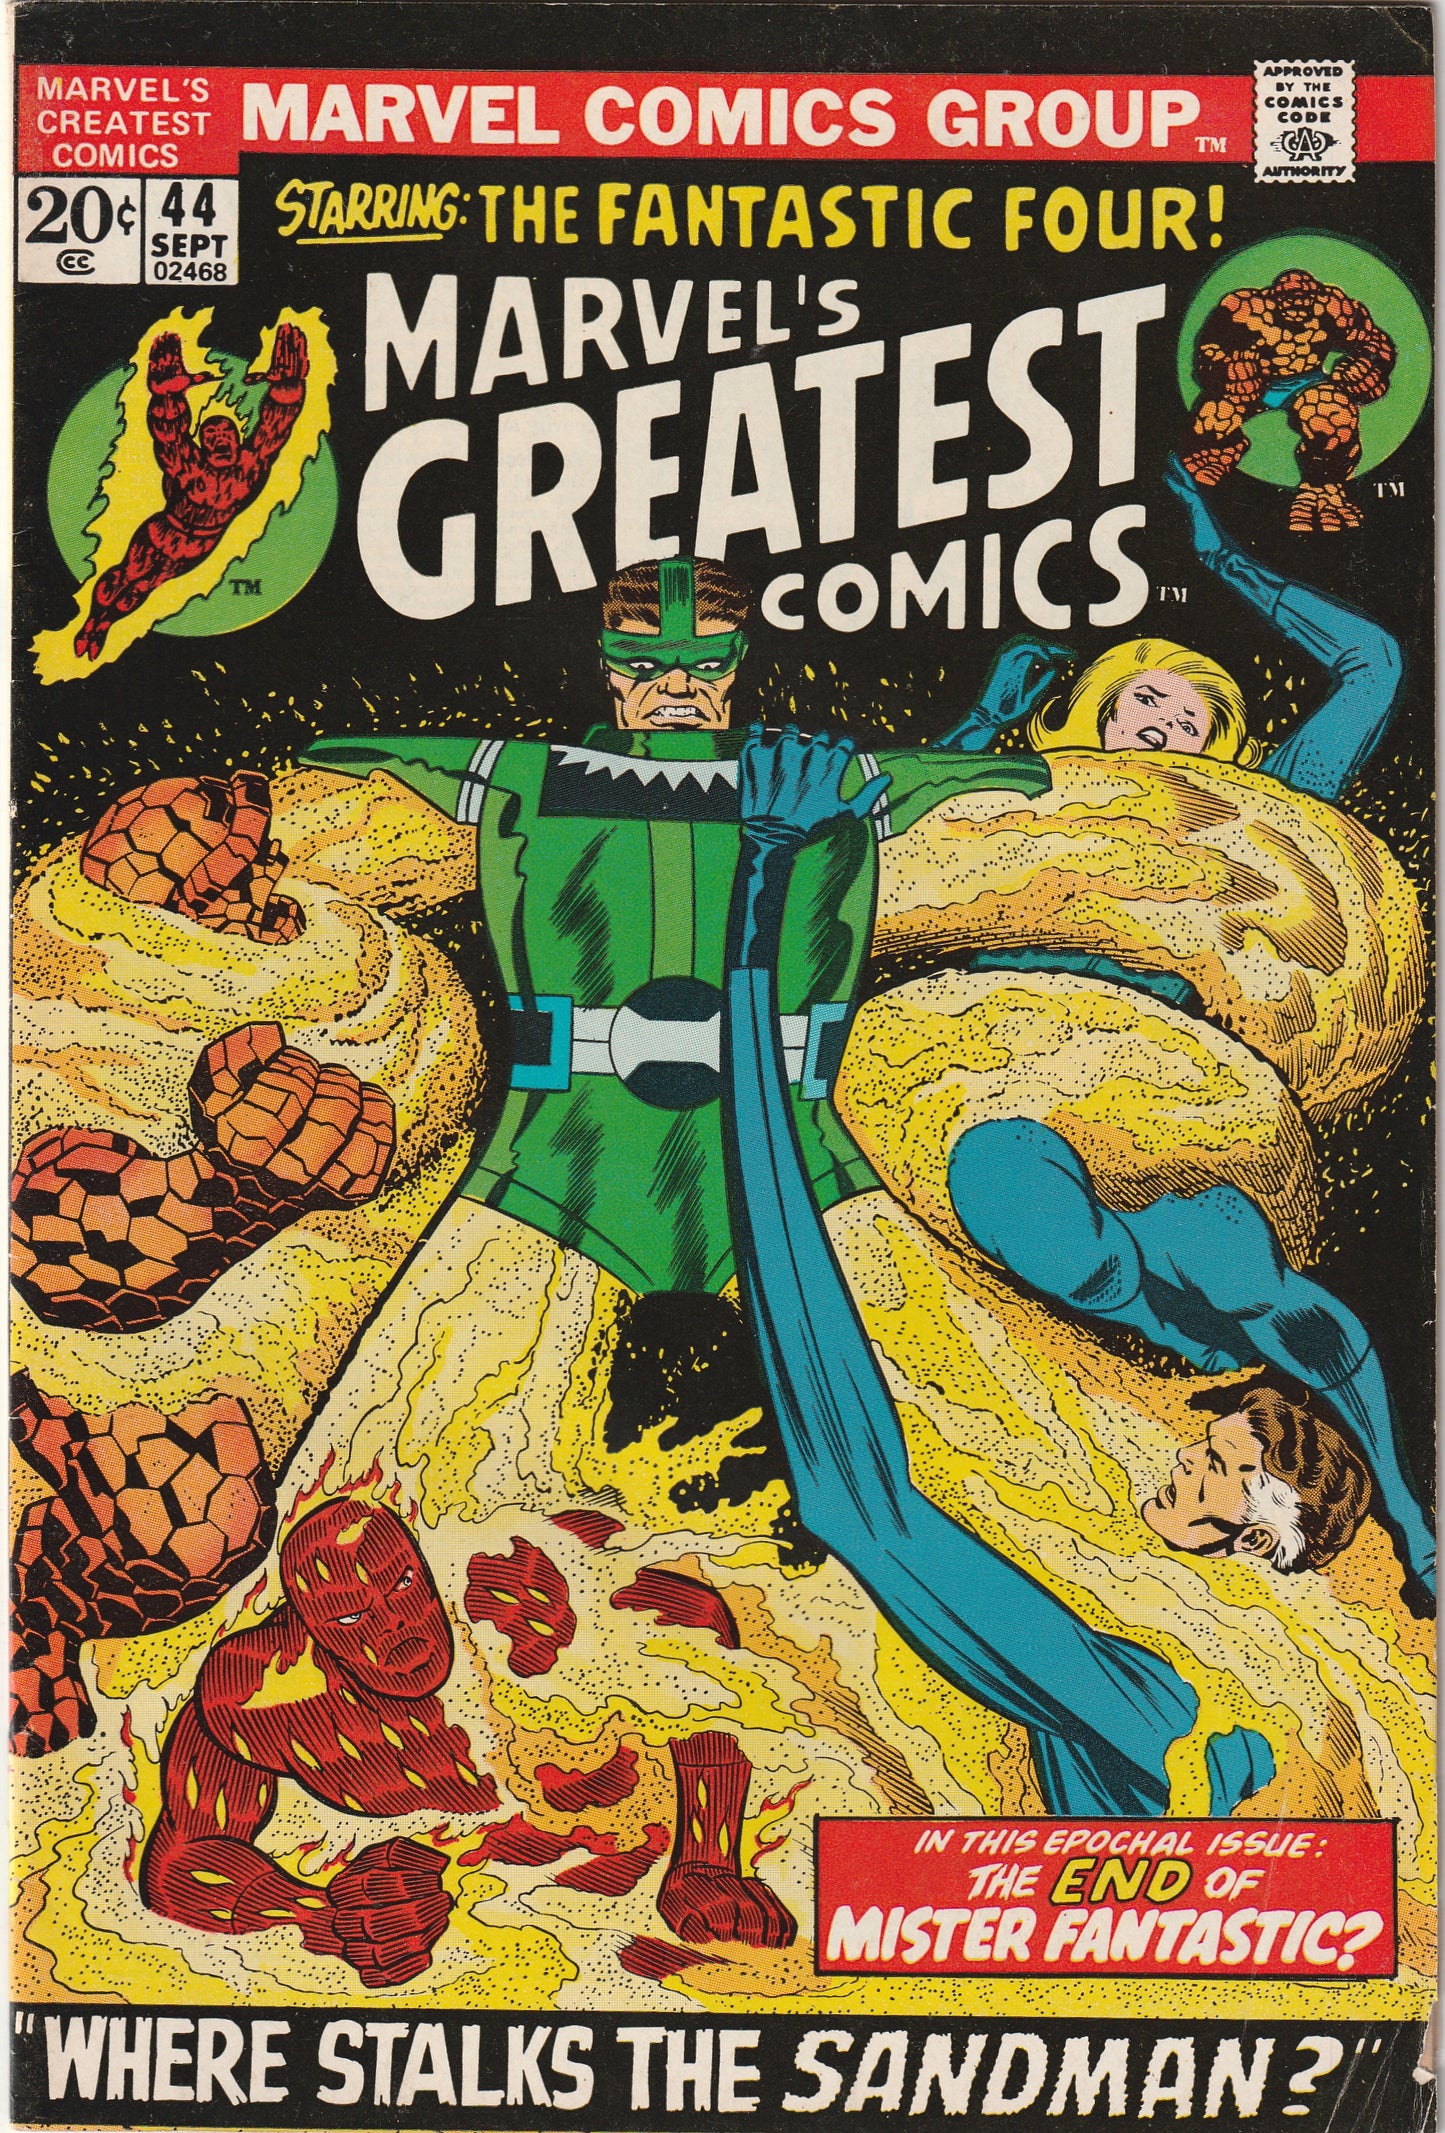 Marvel's Greatest Comics #44 (1973) - The Sandman